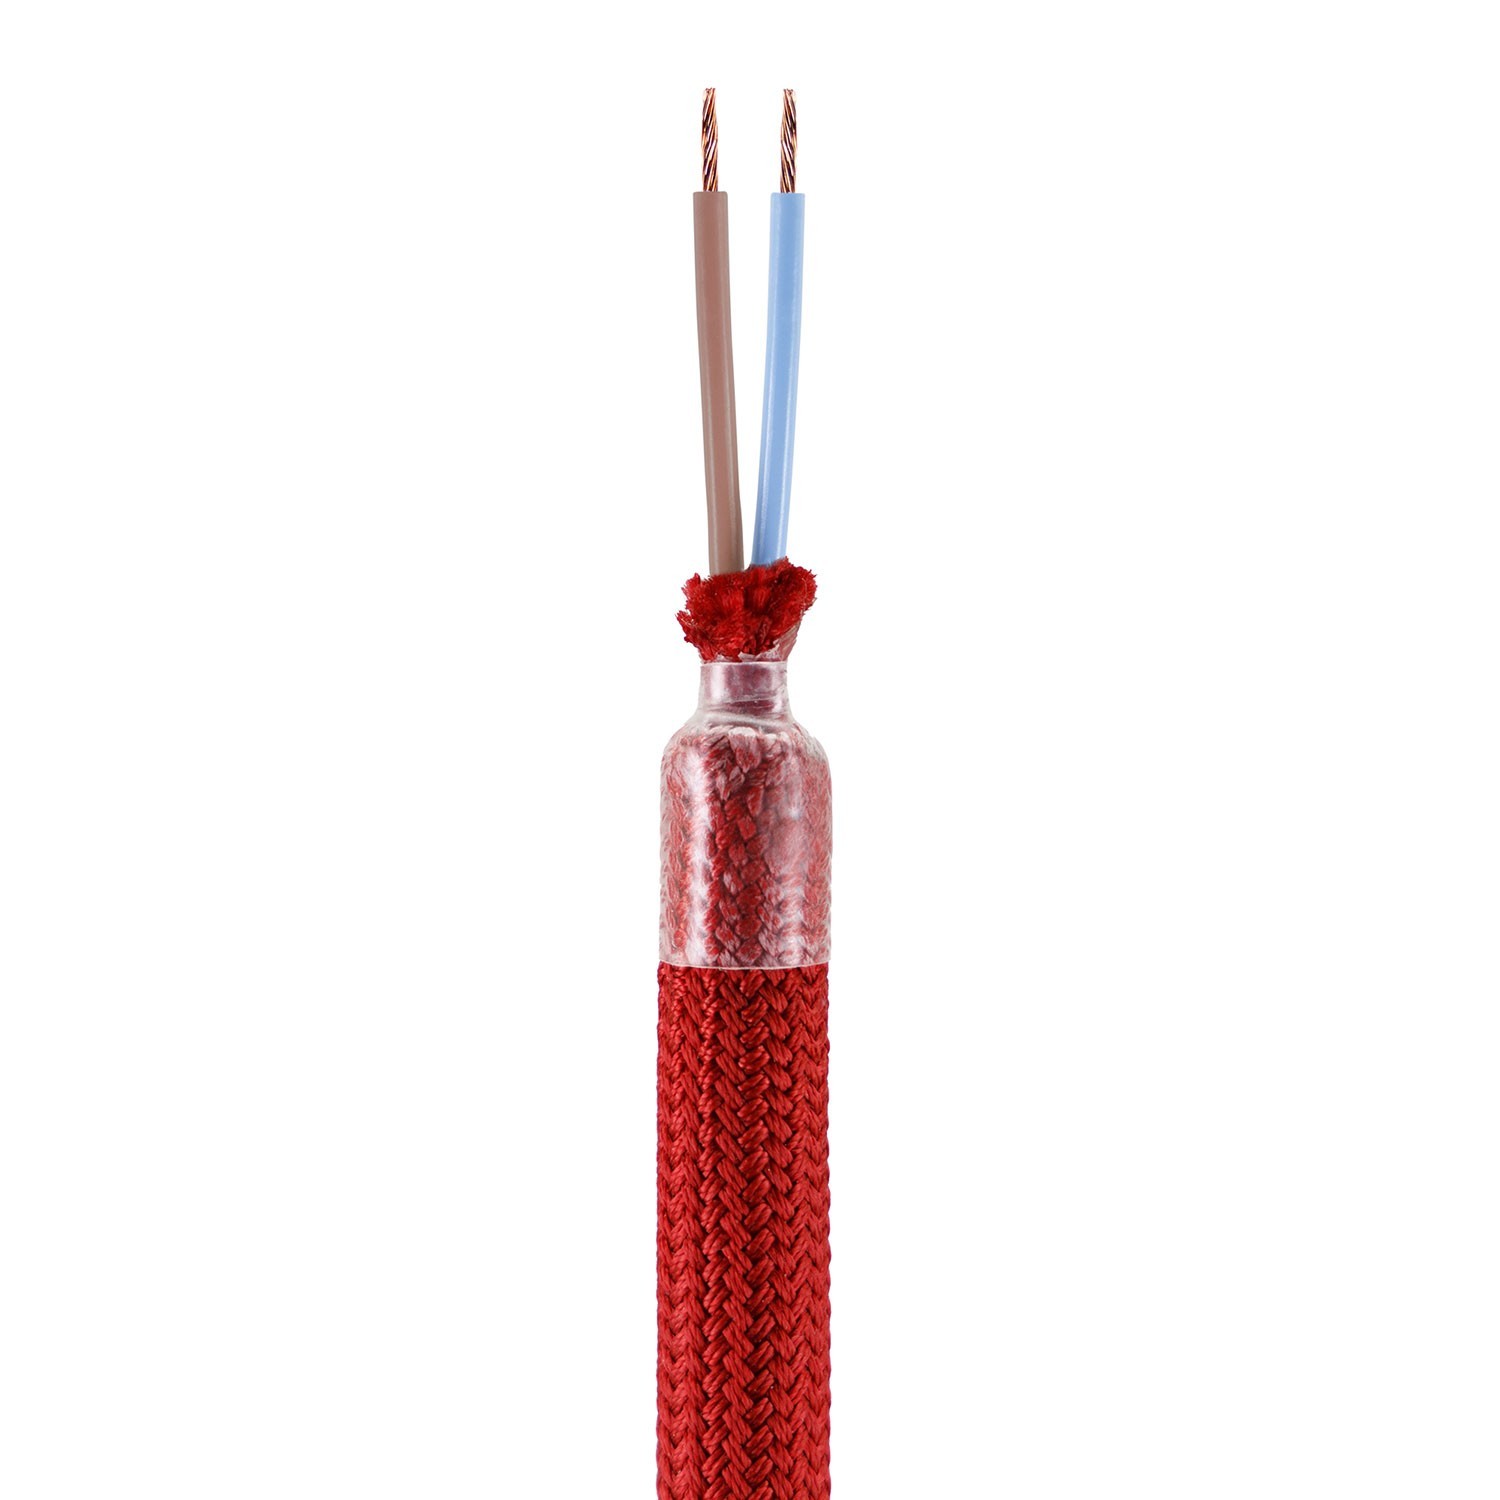 Kit Creative Flex flexibele buis bekleed met rode RM09 stof met metalen eindstukken